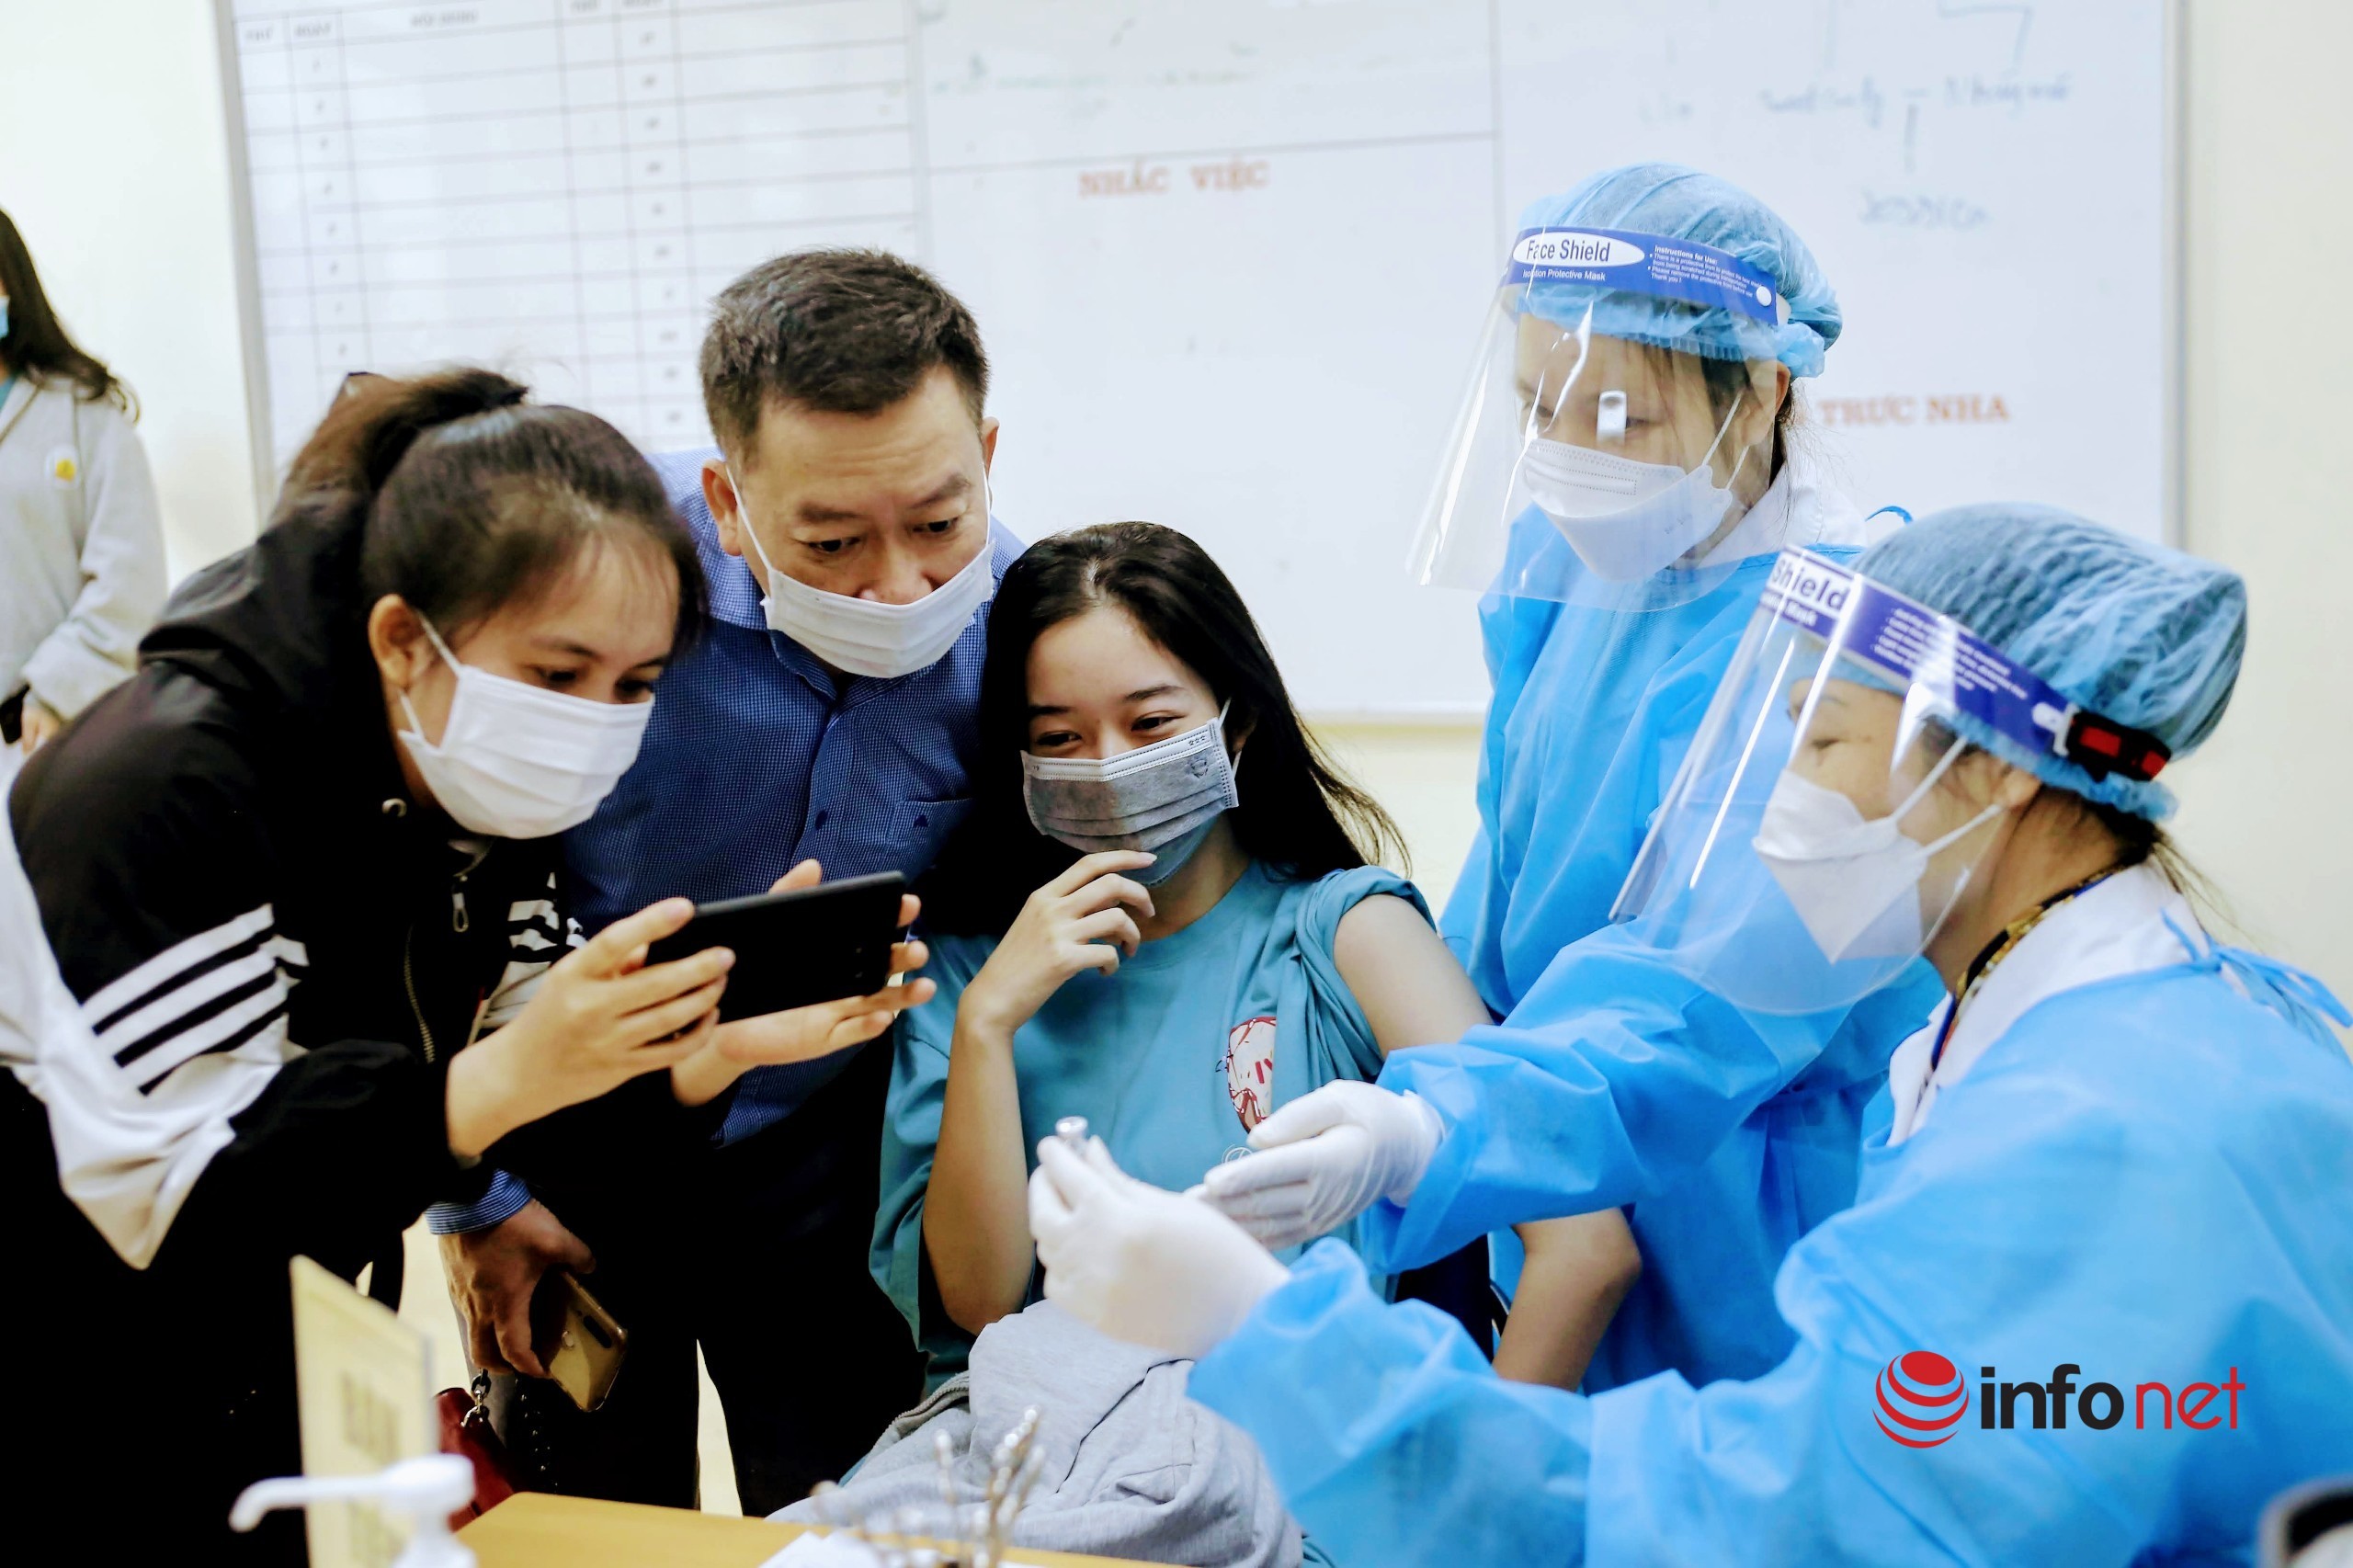 tiêm vắc-xin,Covid-19,học sinh,Hà Nội,tiêm vắc xin cho học sinh,vắc xin